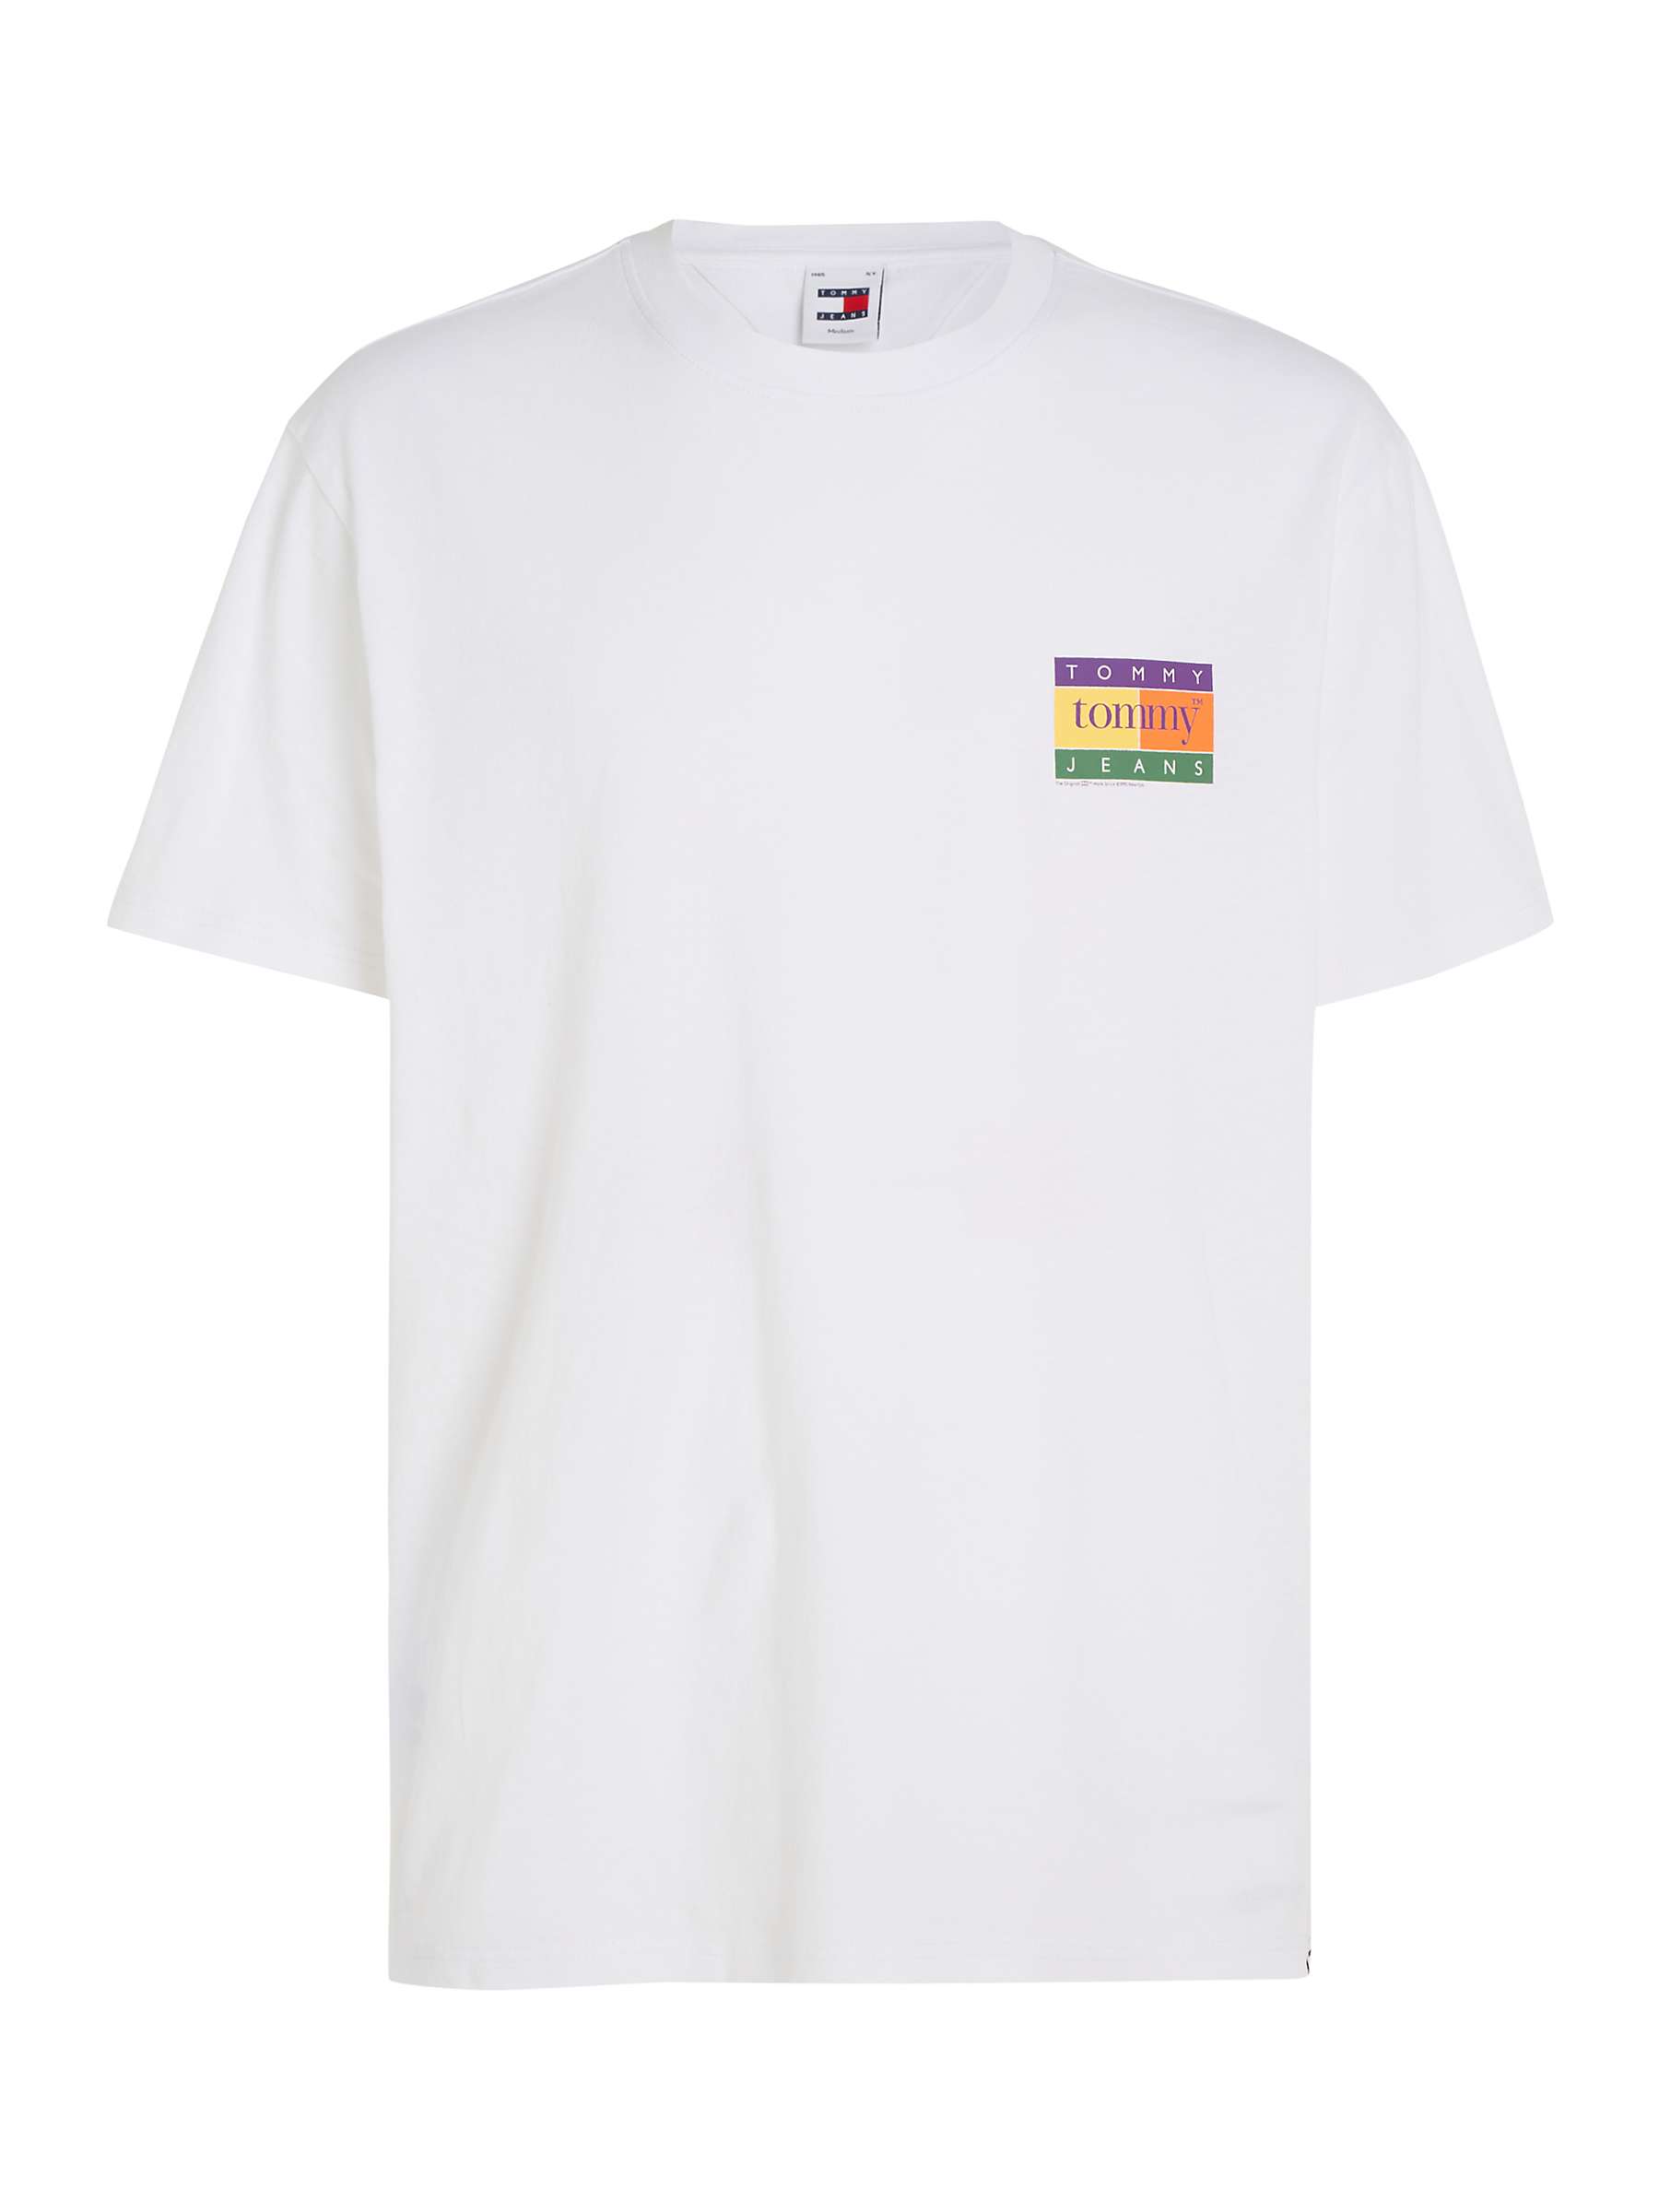 Buy Tommy Hilfiger Summer Flag T-Shirt Online at johnlewis.com